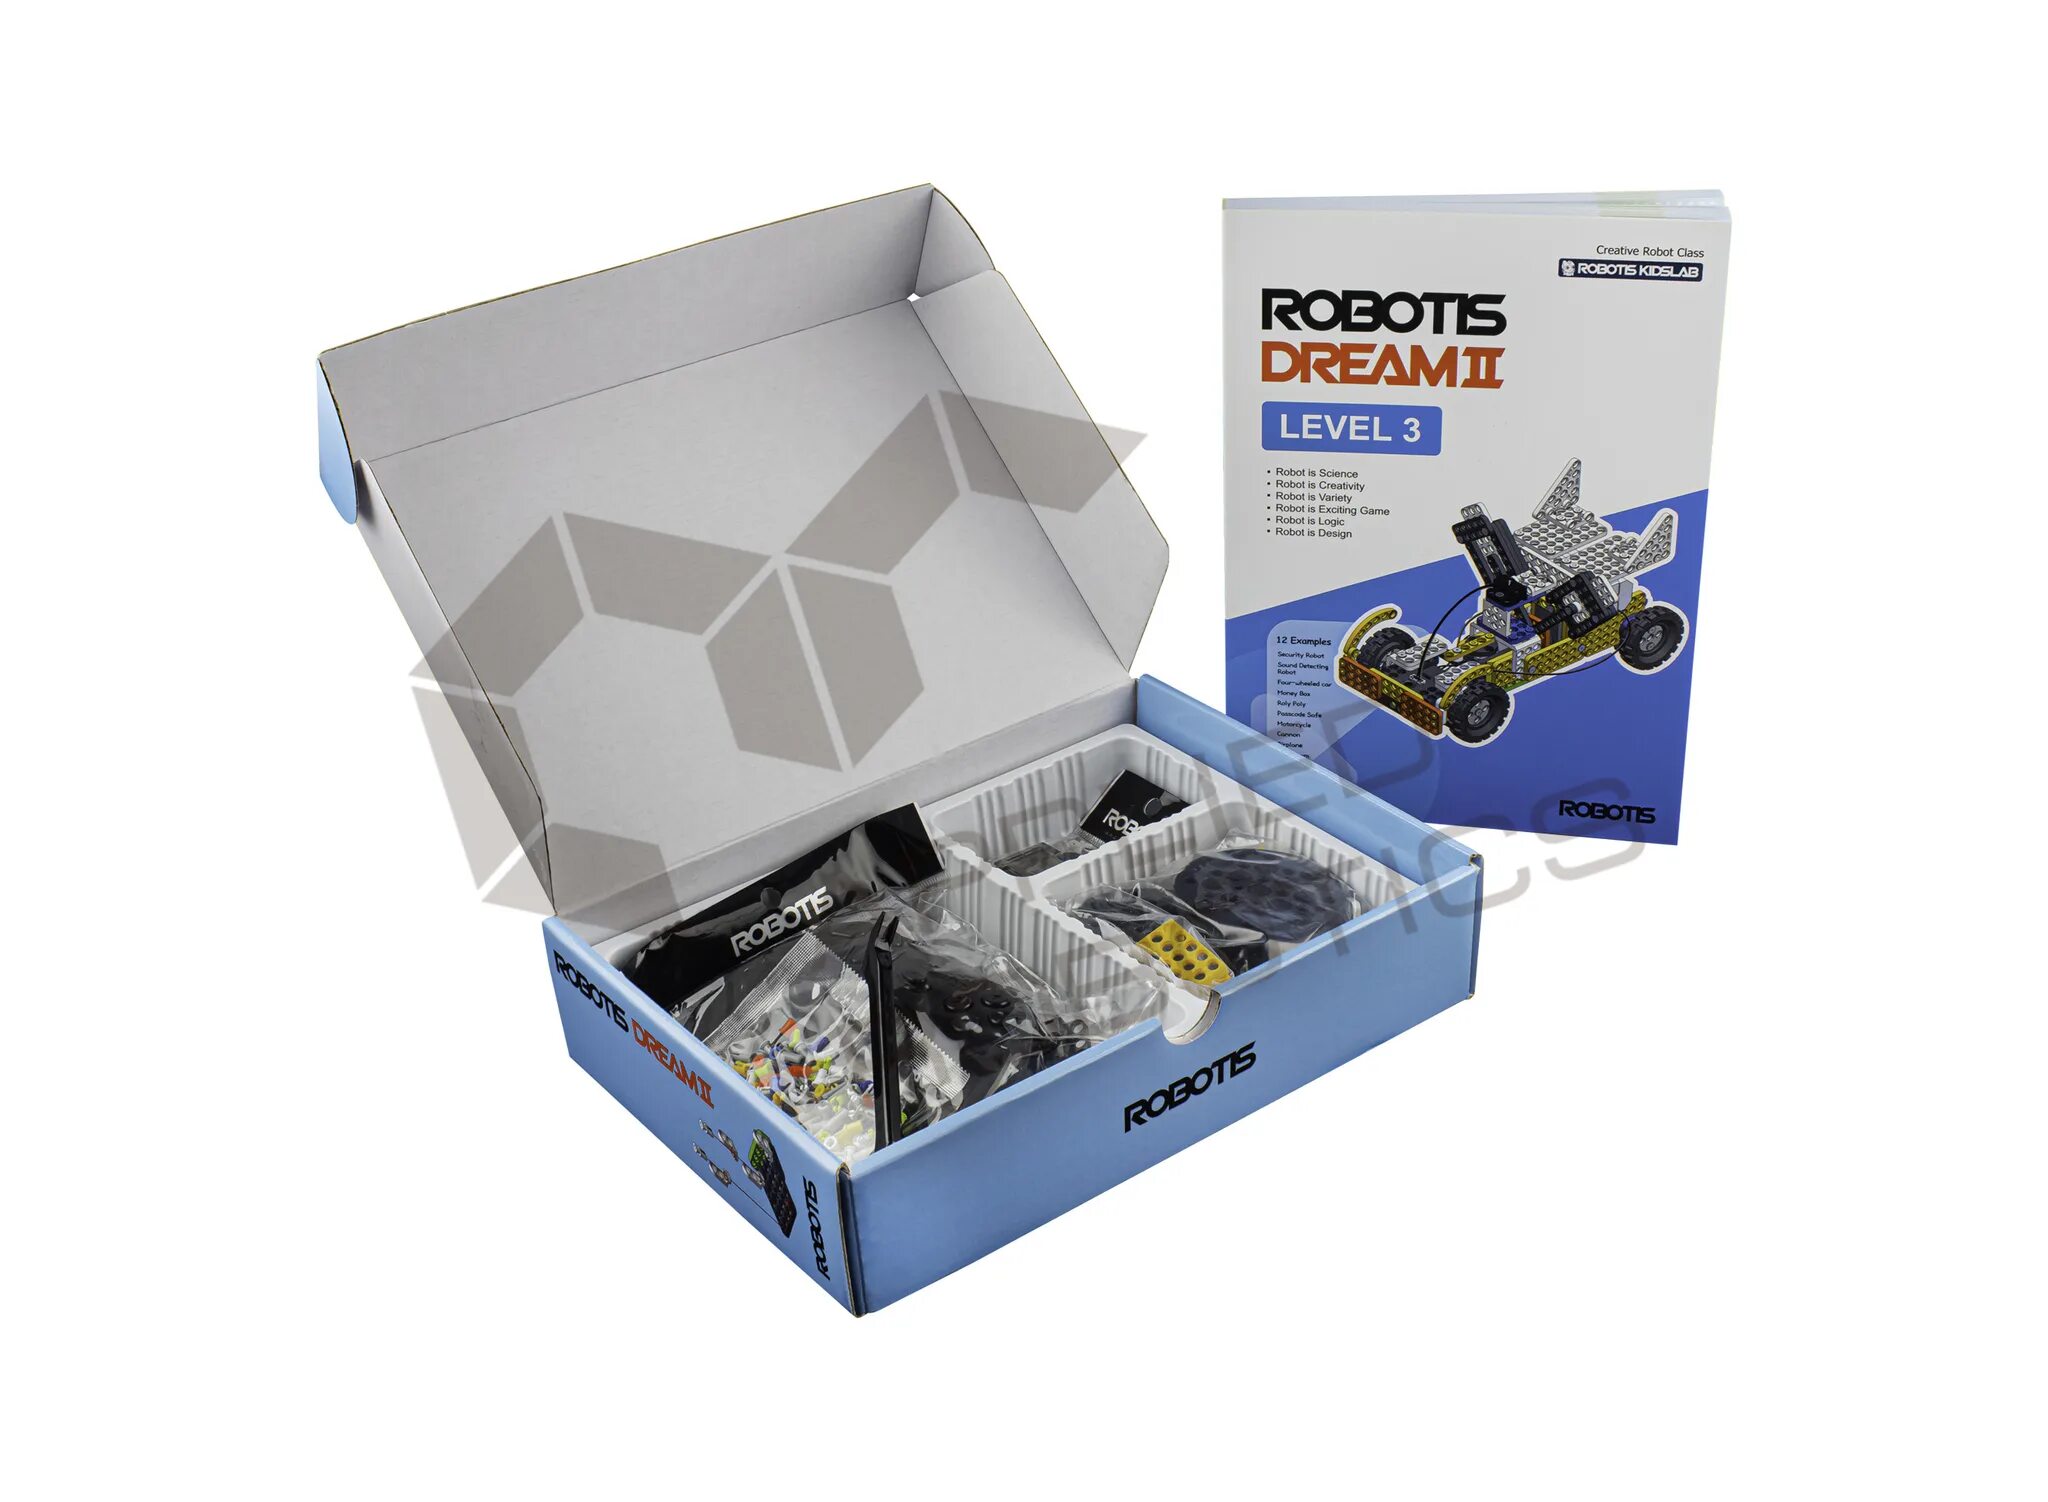 Robotis Dream II Level 1 Kit артикул: 901-0036-201. Комплект робототехнический образовательный robotis Dream II lvl 4. Robotis Dream II заклёпка. Электромеханический конструктор robotis Dream 0066 уровень 3+4.